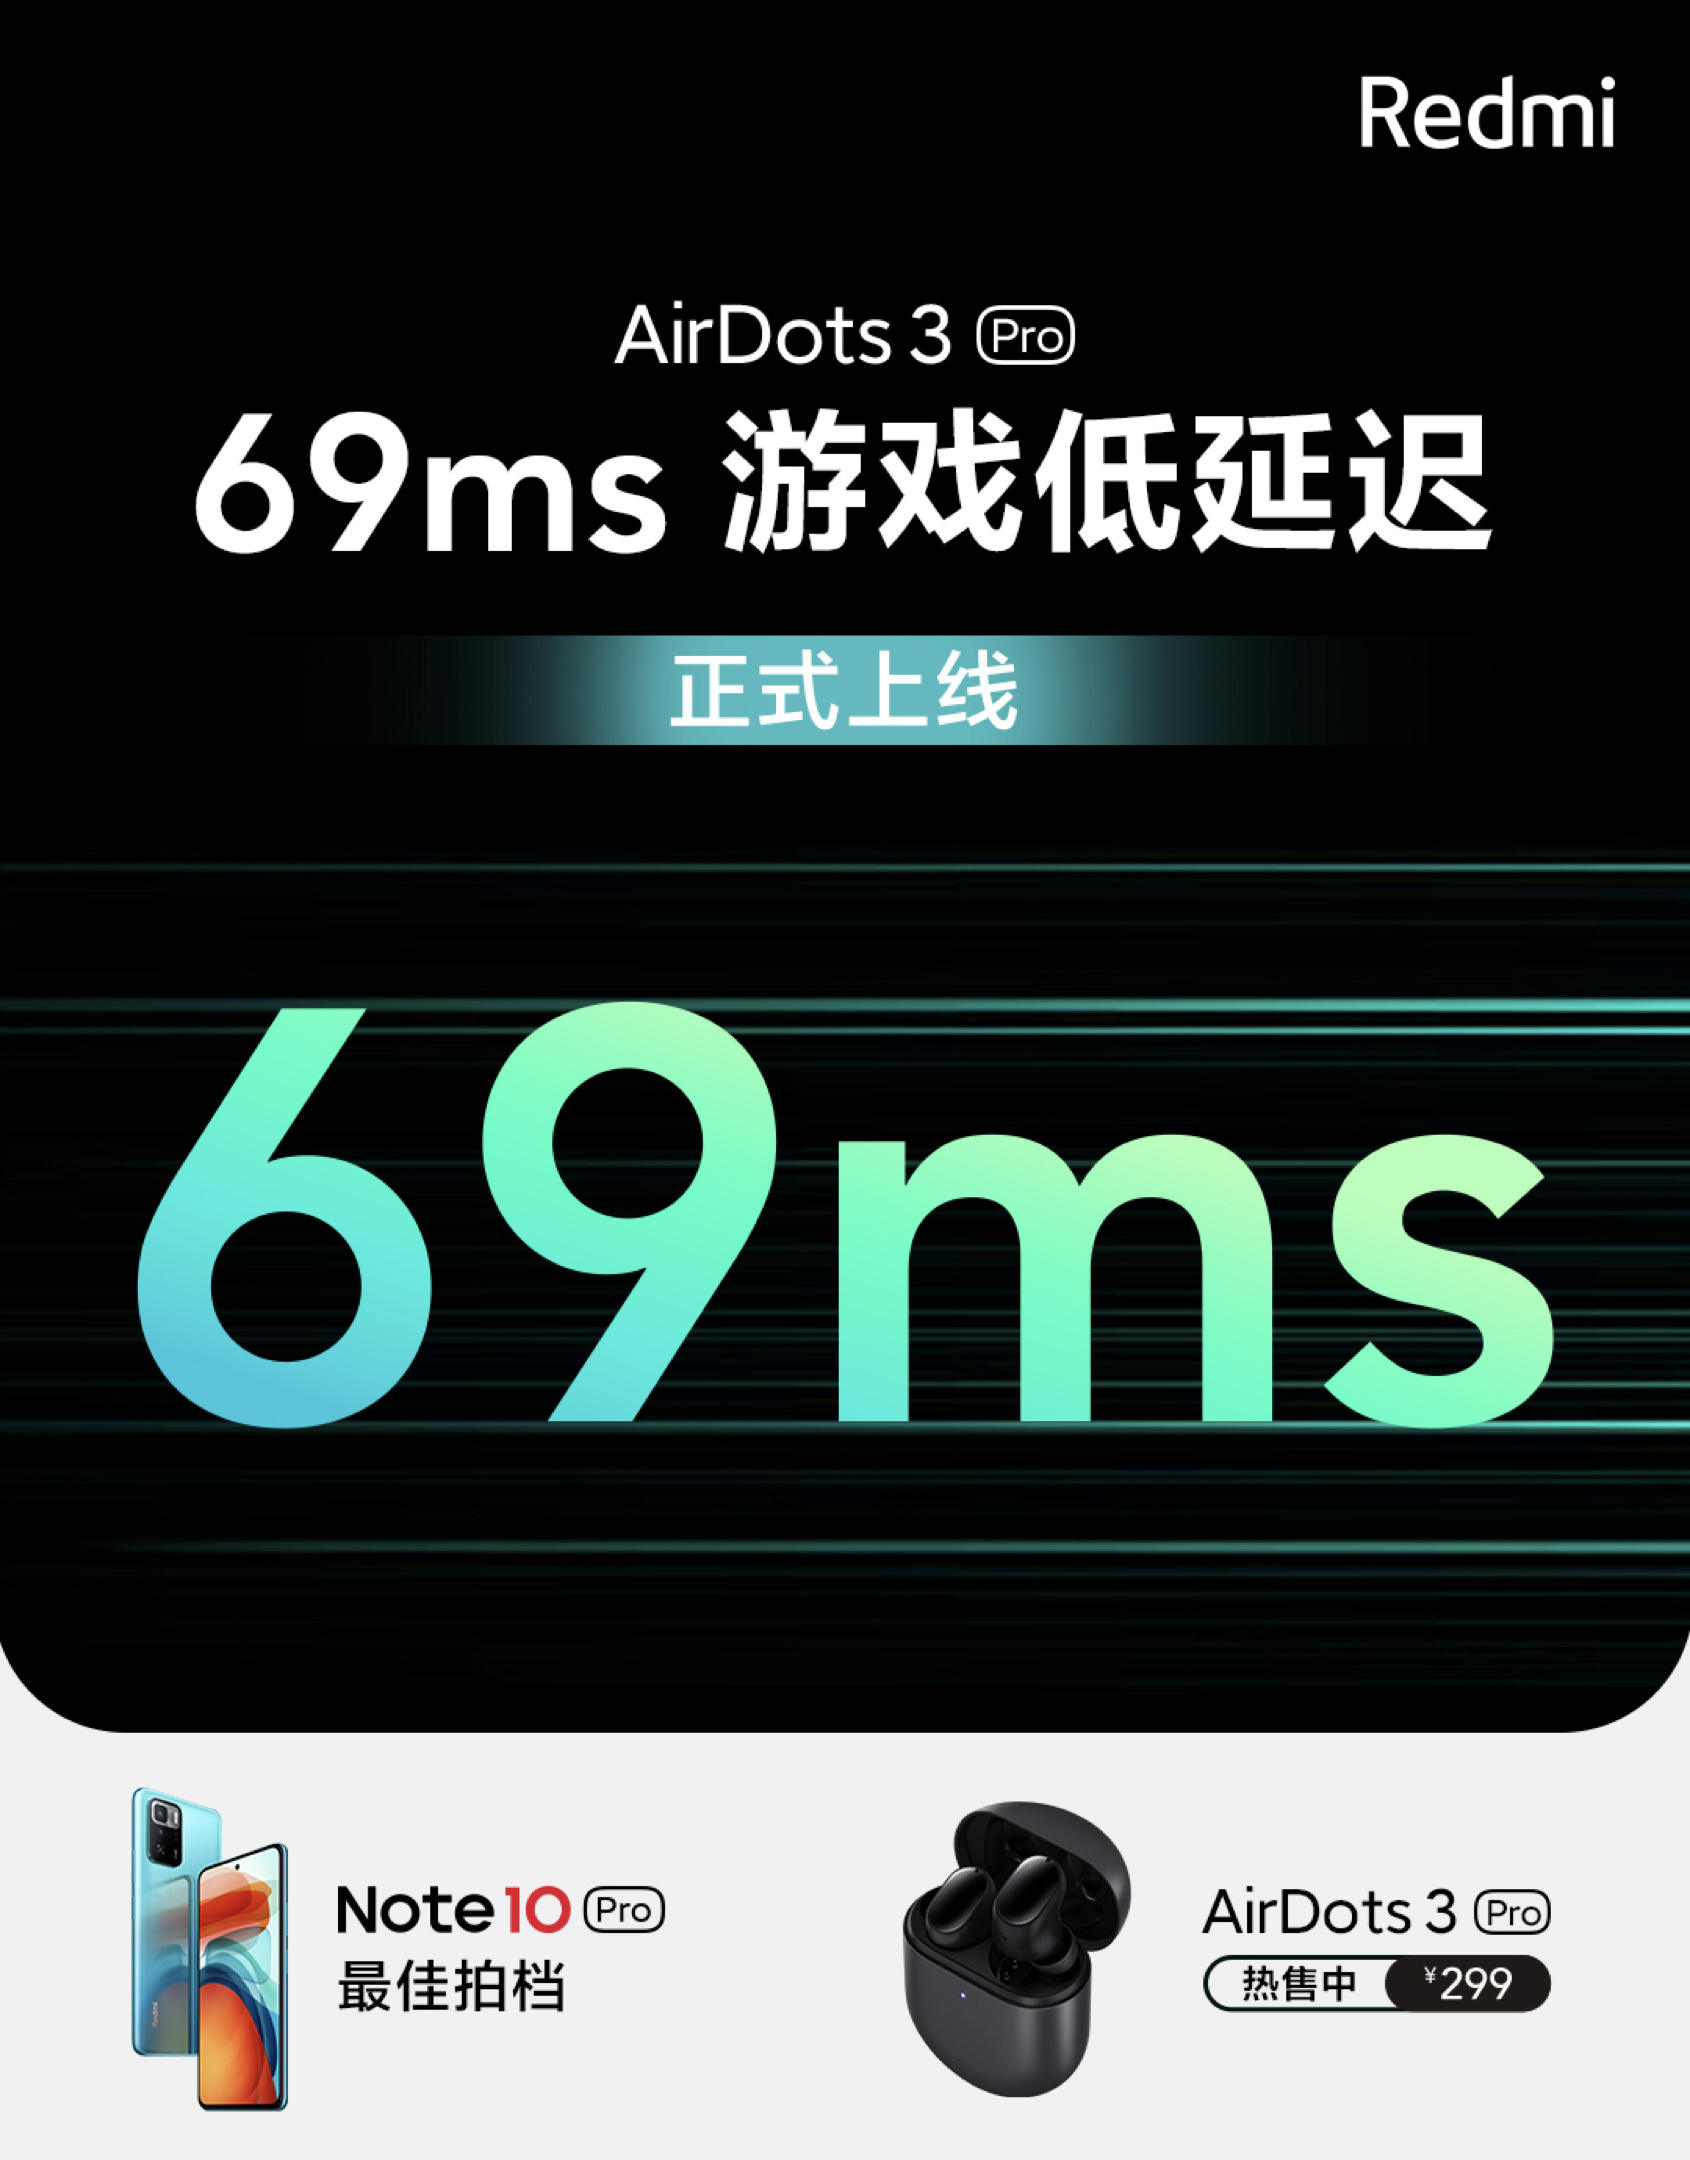 低至69ms！红米AirDots 3 Pro游戏低延迟功能上线-我爱音频网